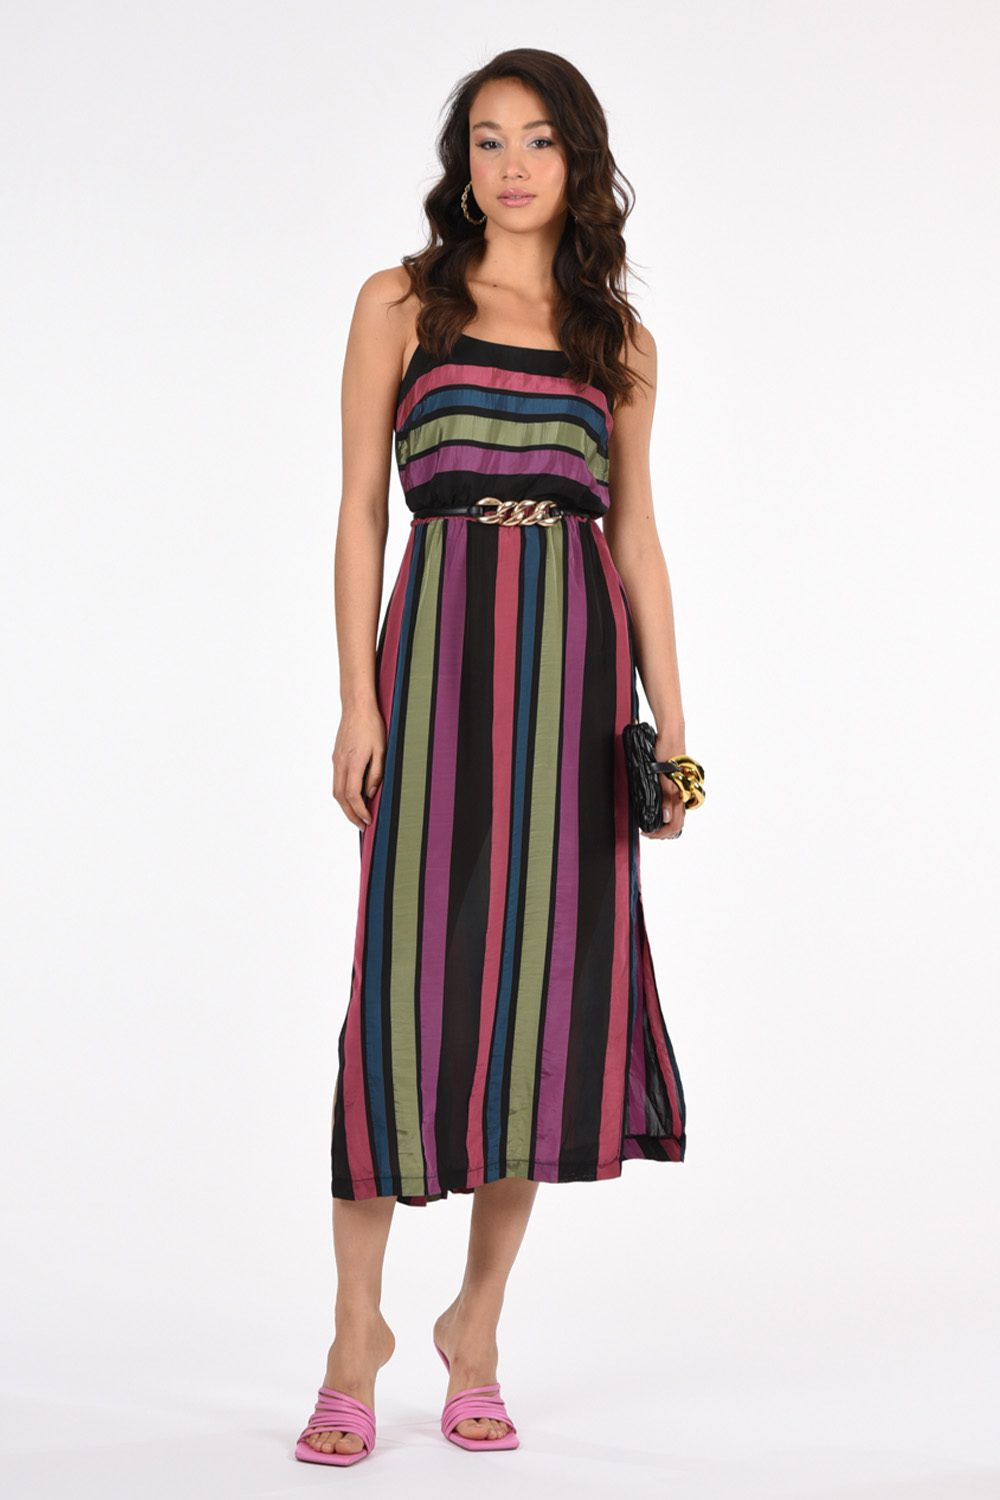 שמלה stripes פטרול | אסף פלג - בגדי מעצבים לנשים